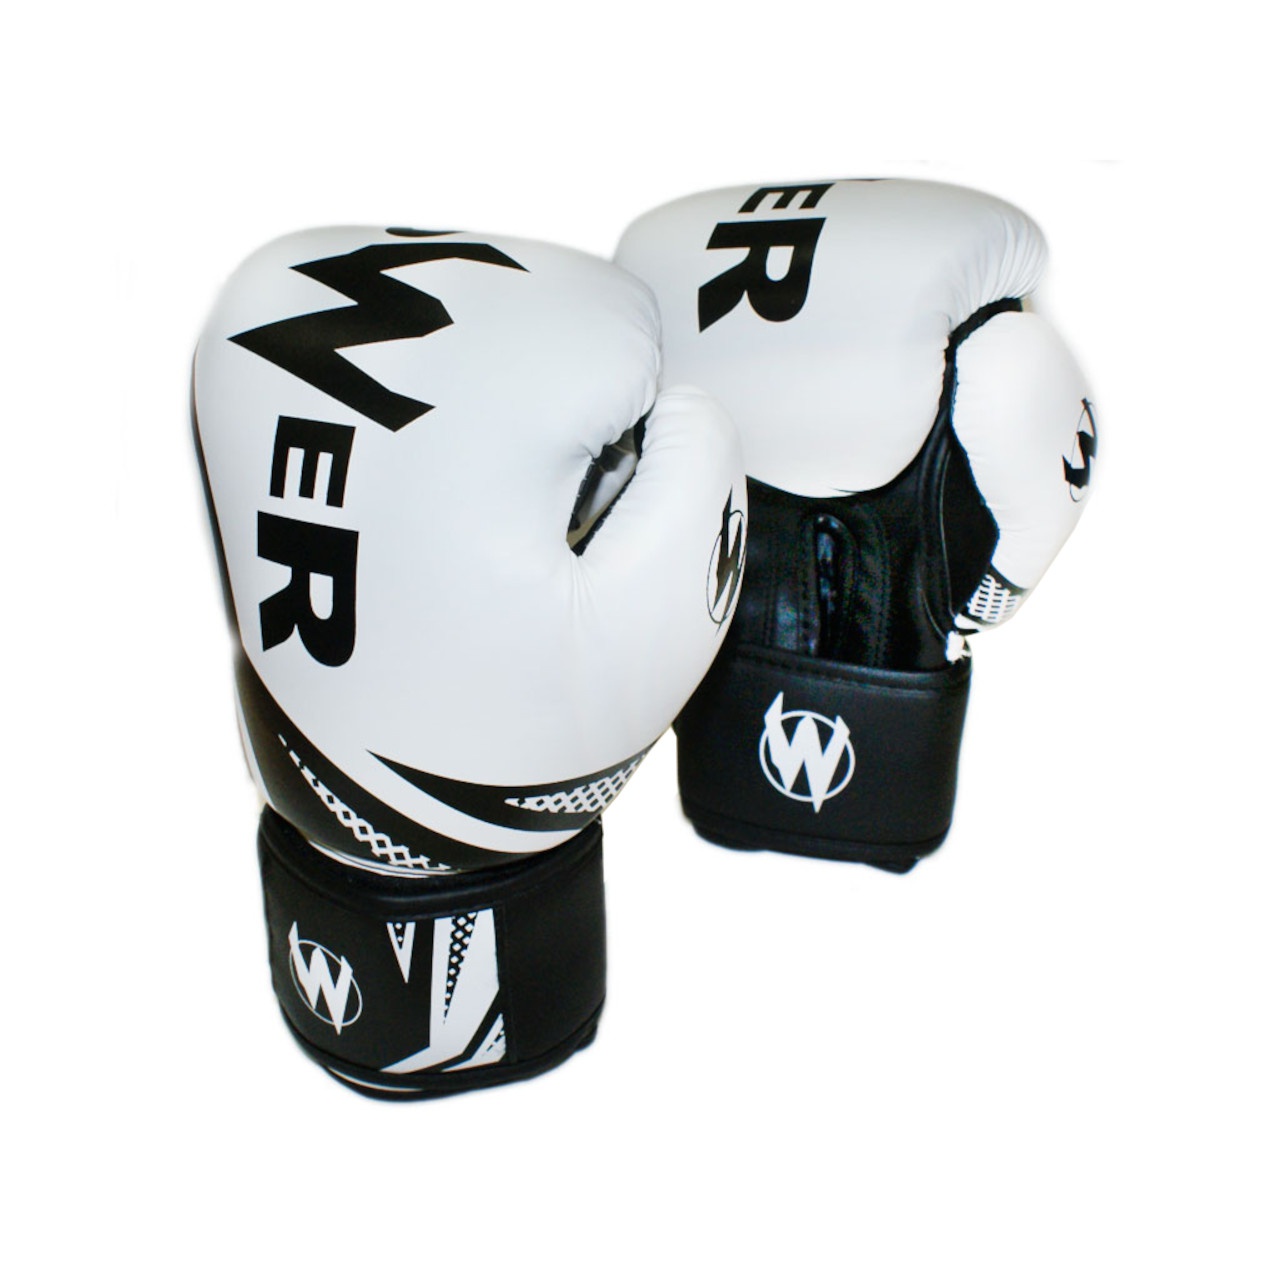 Рукавички боксерські POWER білі з чорними елементами 6 унцій POW-W-Б6